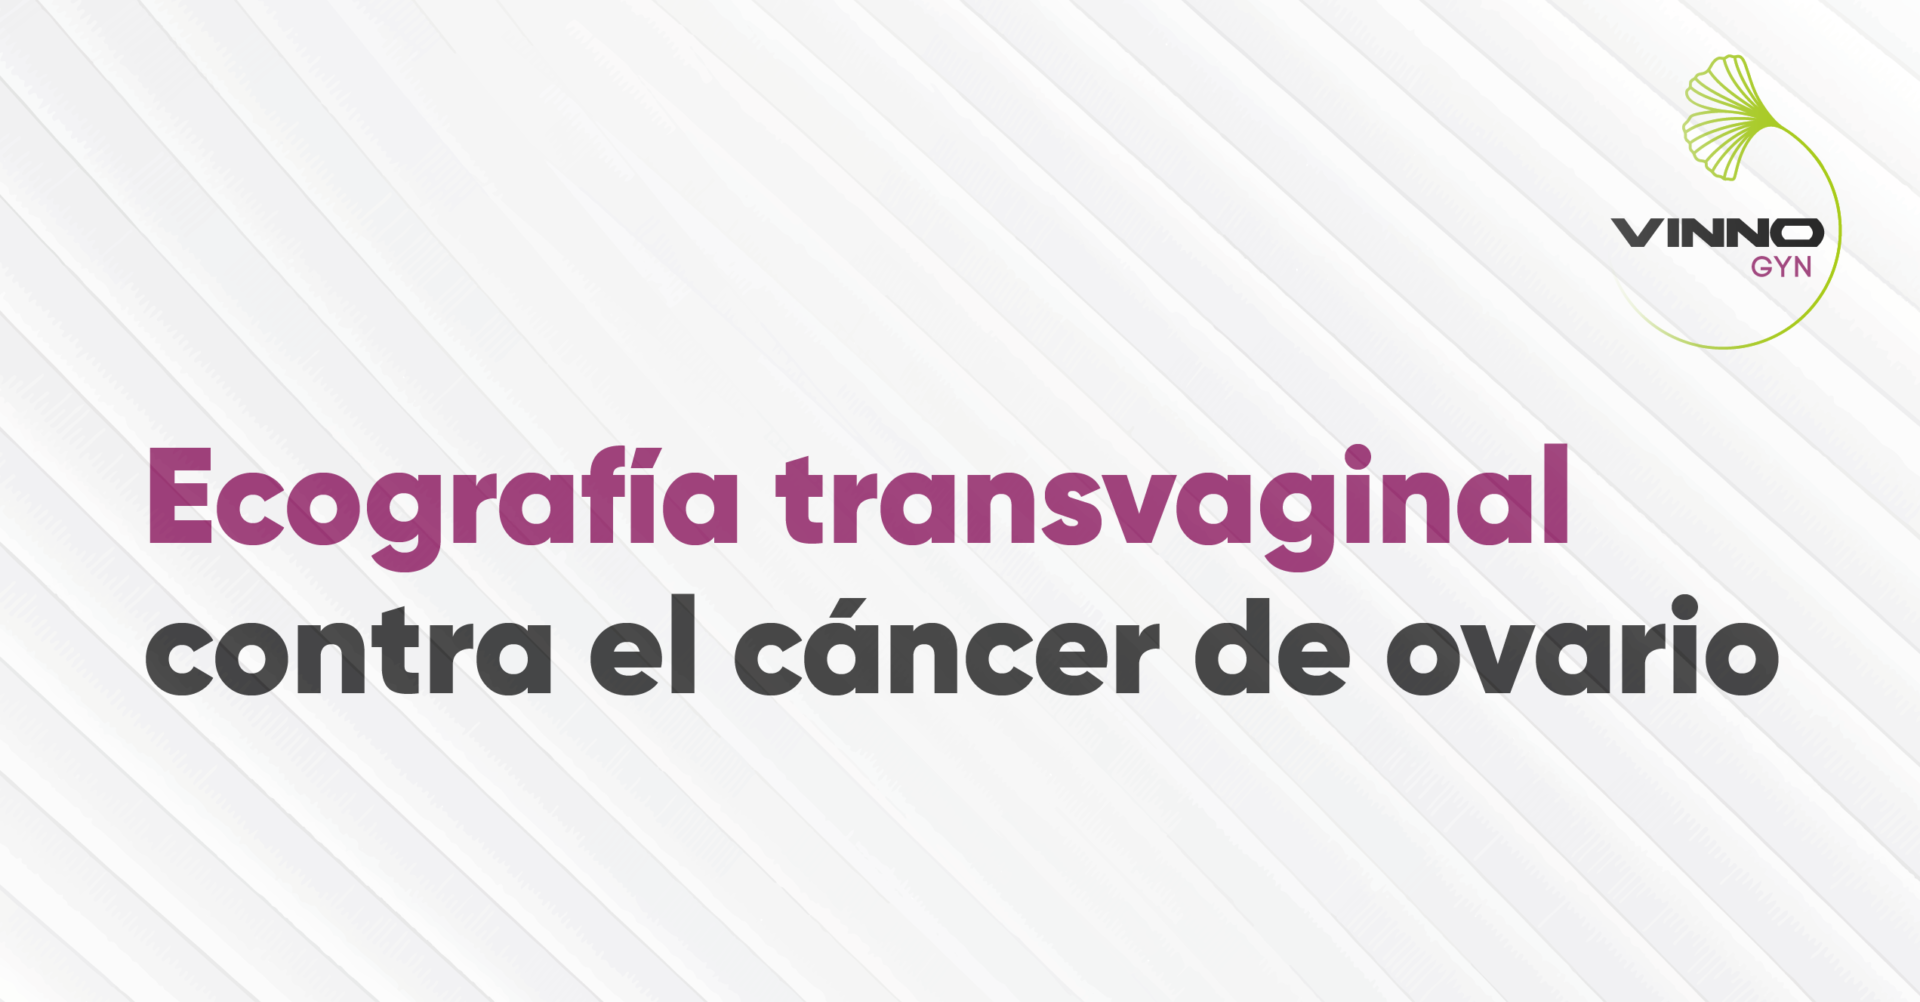 Ecografía transvaginal para la detección temprana de cáncer de ovario